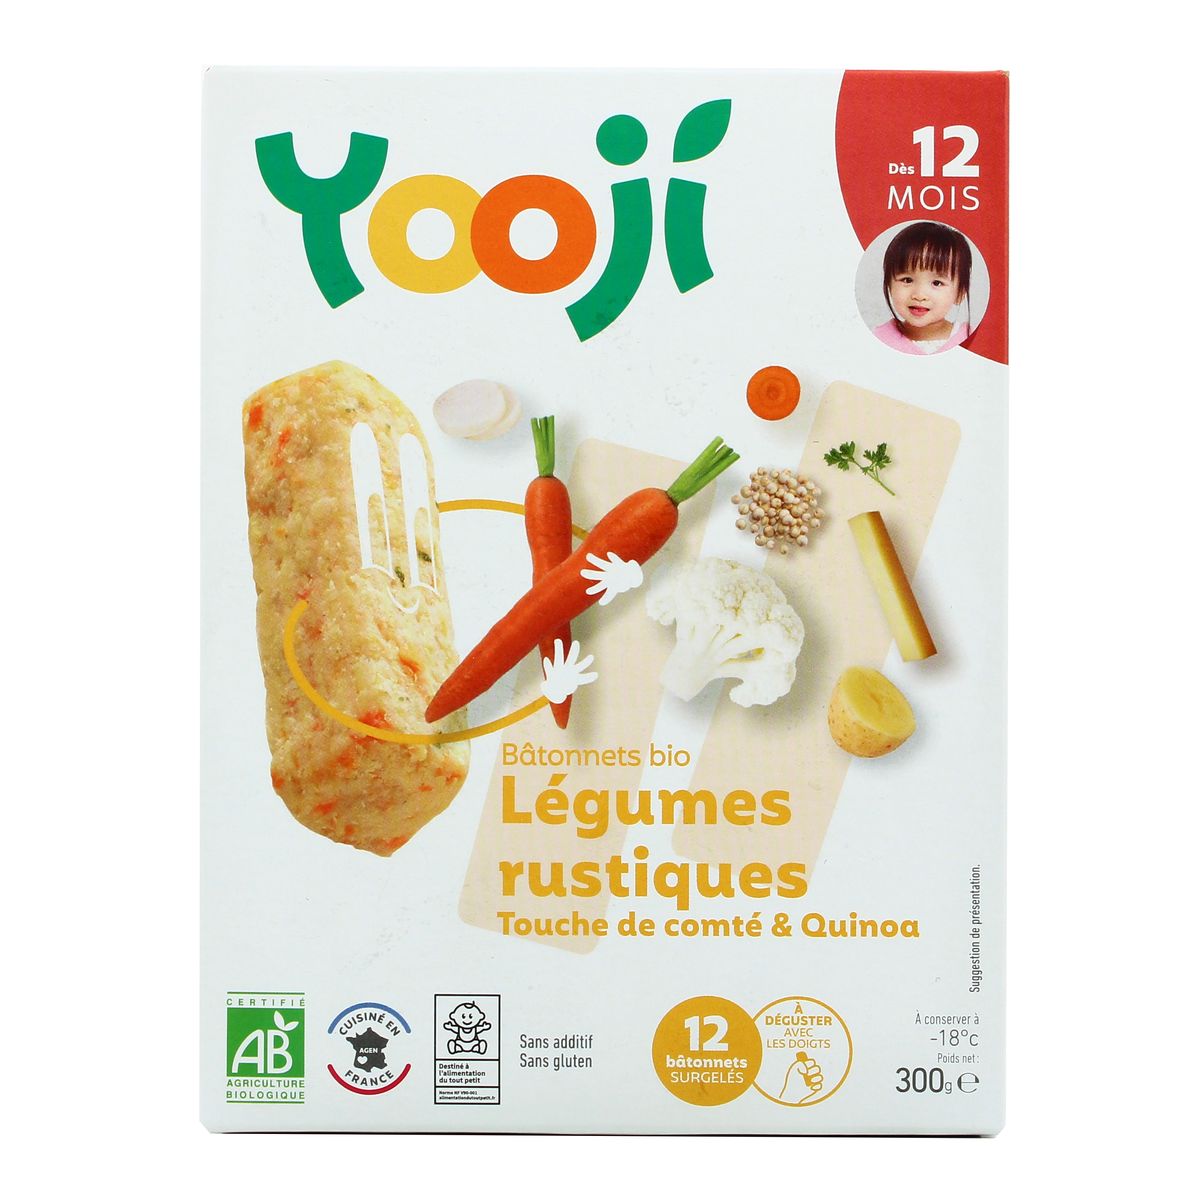 Yooji Mes Petits Batonnets Bio Legumes Rustiques Et Touche De Comte Des 12 Mois